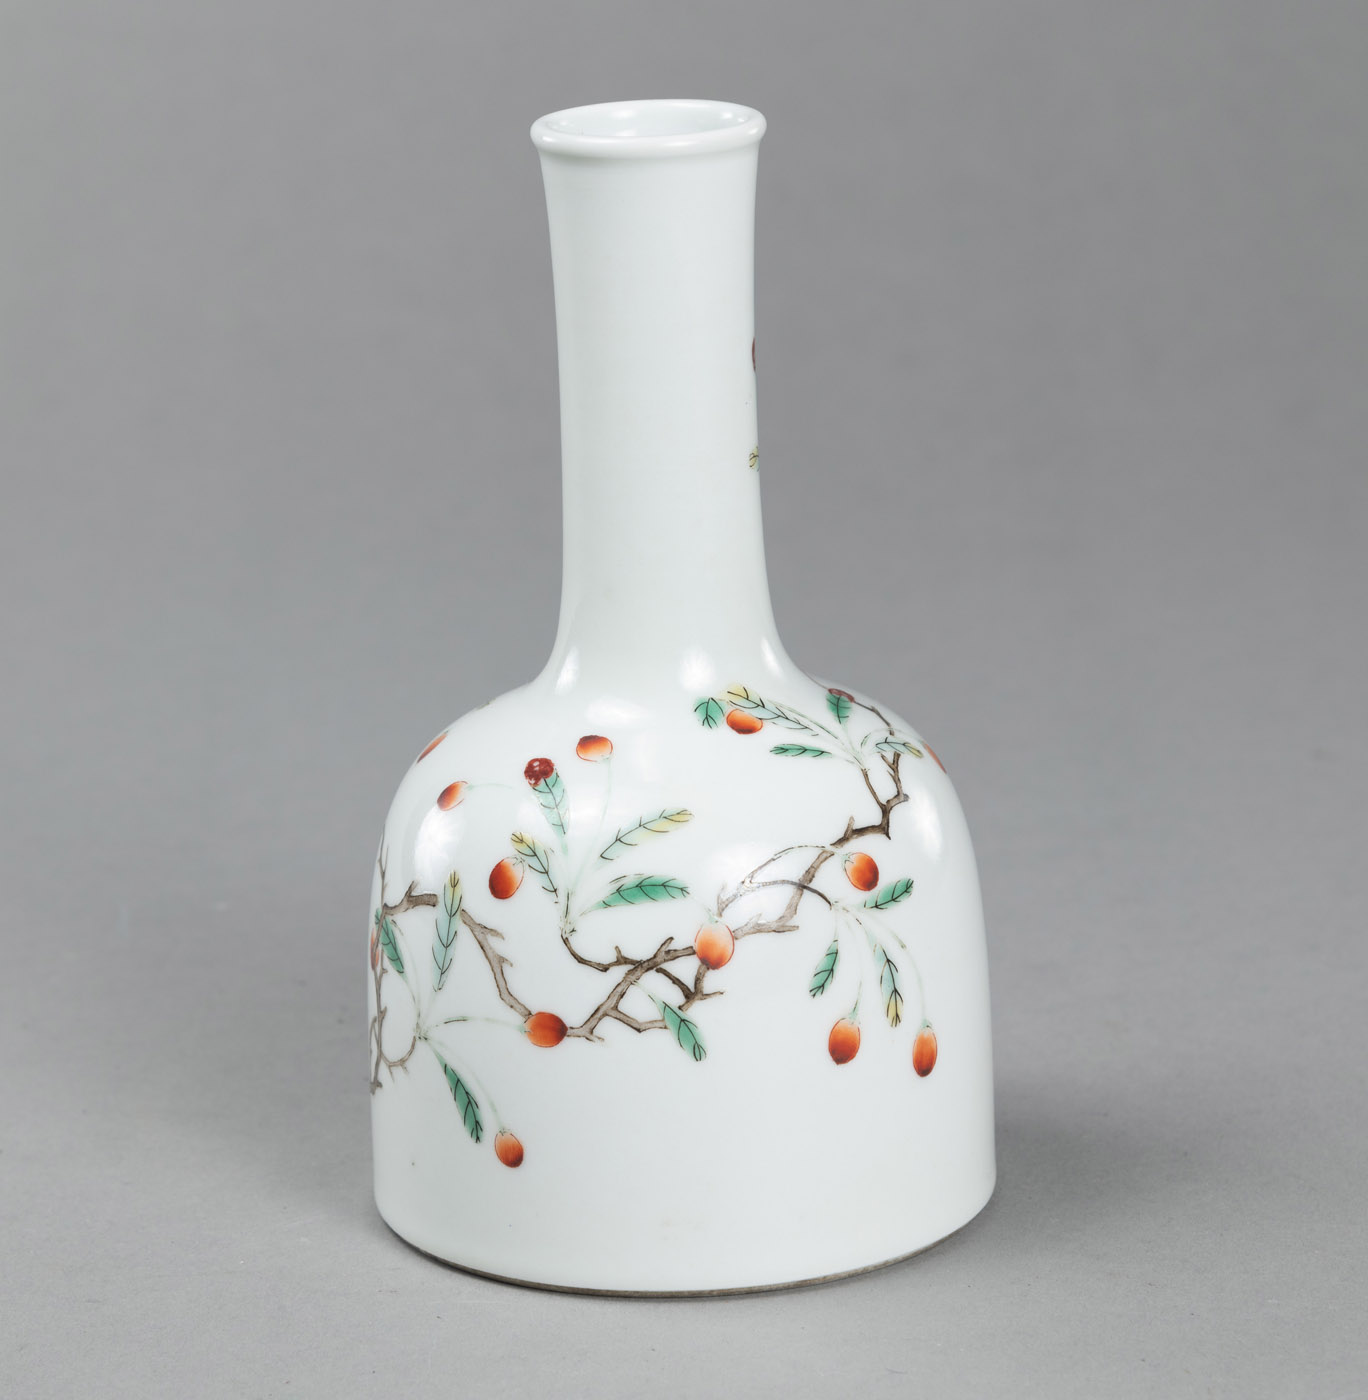 <b>Porzellanvase in Schlegelform mit 'Famille rose'-Dekor von Goji-Zweigen und Schmetterlingen</b>